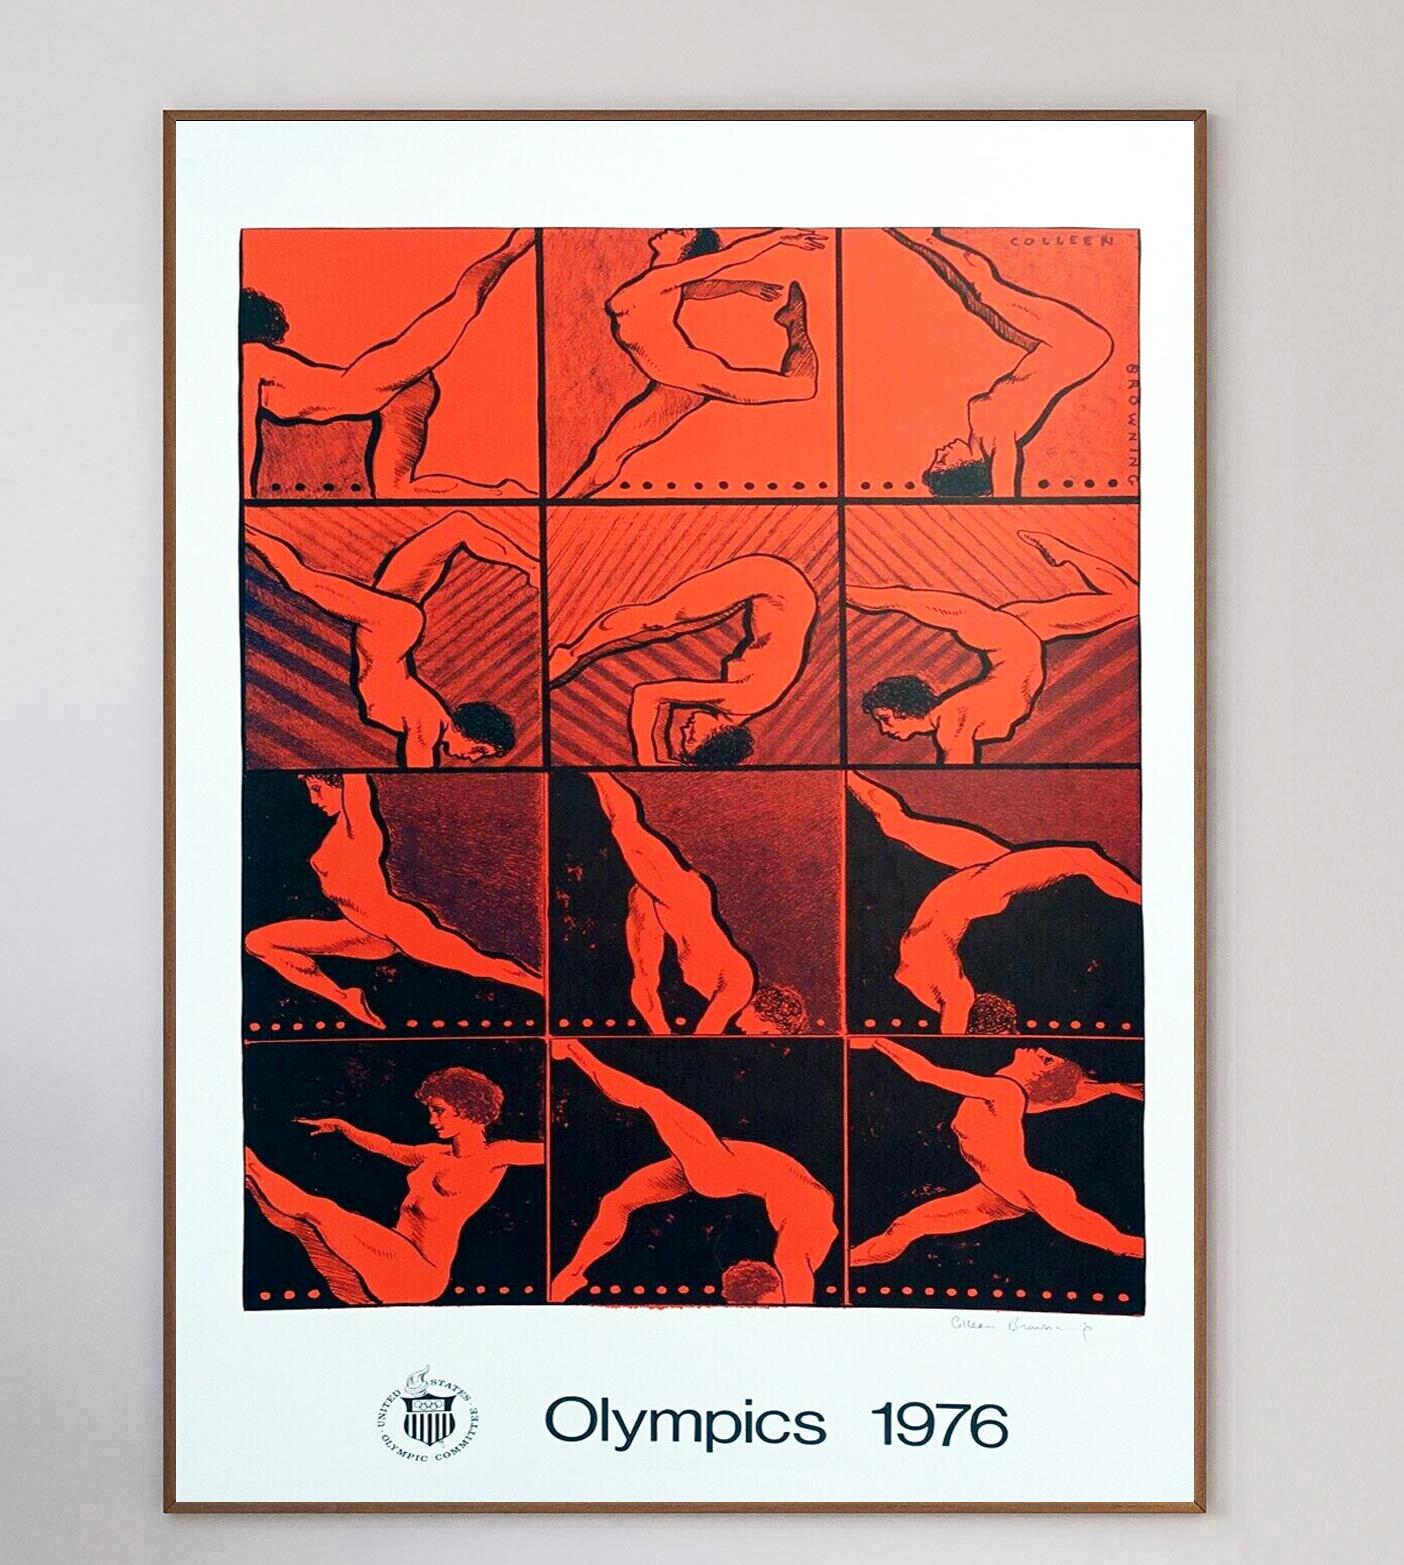 La peintre anglo-américaine Colleen Browning a été l'une des nombreuses artistes chargées de créer des affiches d'art pour la promotion des Jeux olympiques d'été de 1976 à Montréal. Ces jeux, les premiers et les seuls jeux d'été organisés au Canada,